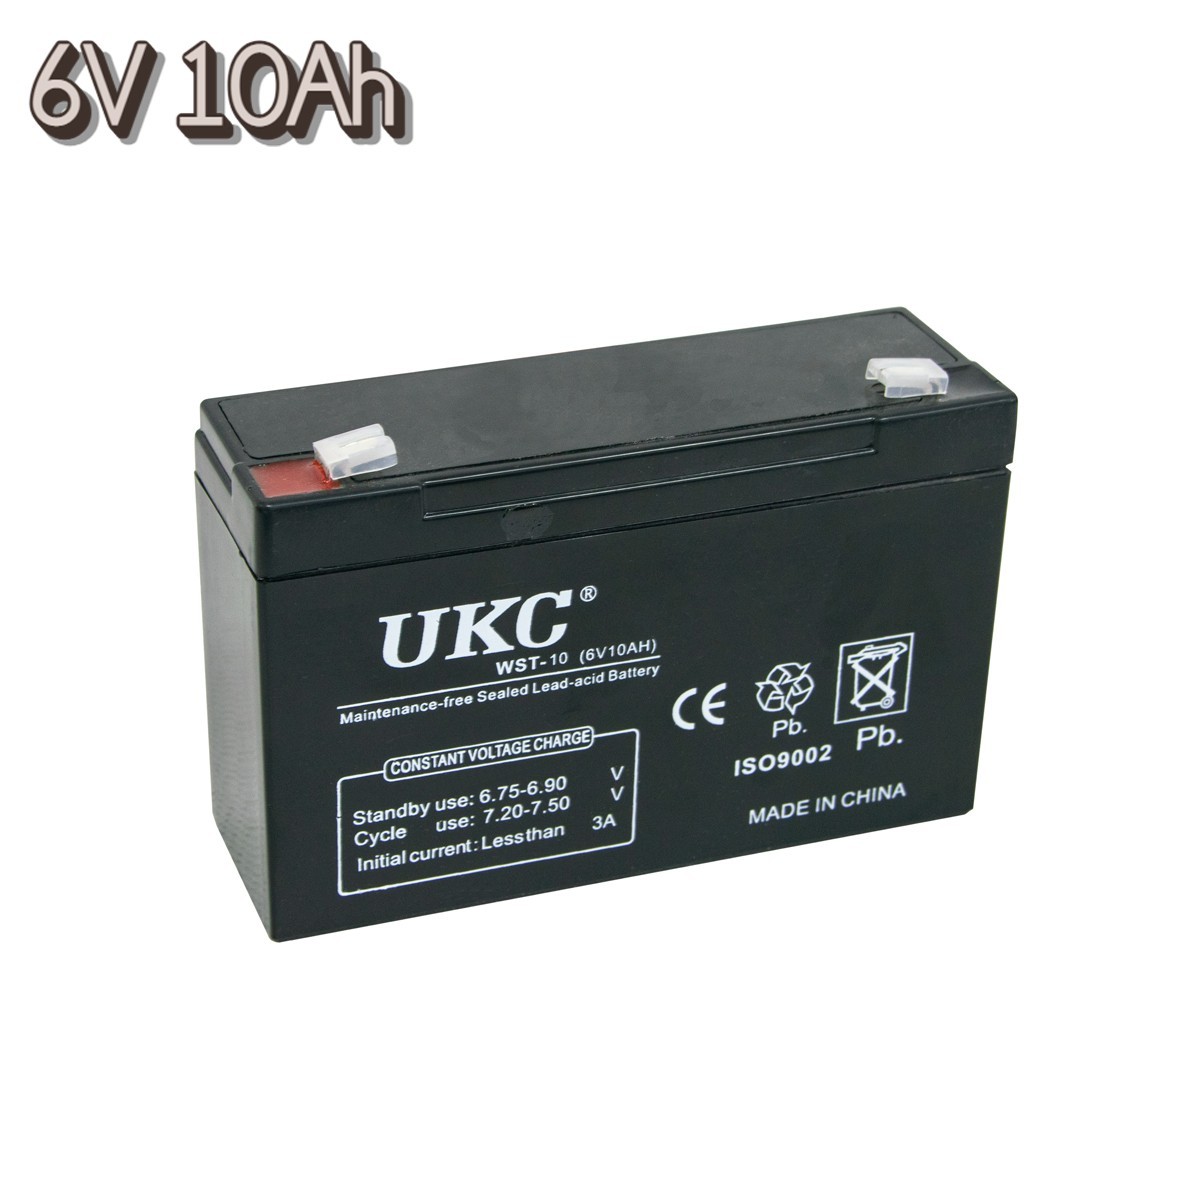 Необслуживаемый аккумулятор для бесперебойника UKC WST-10 6V 10Ah акб .